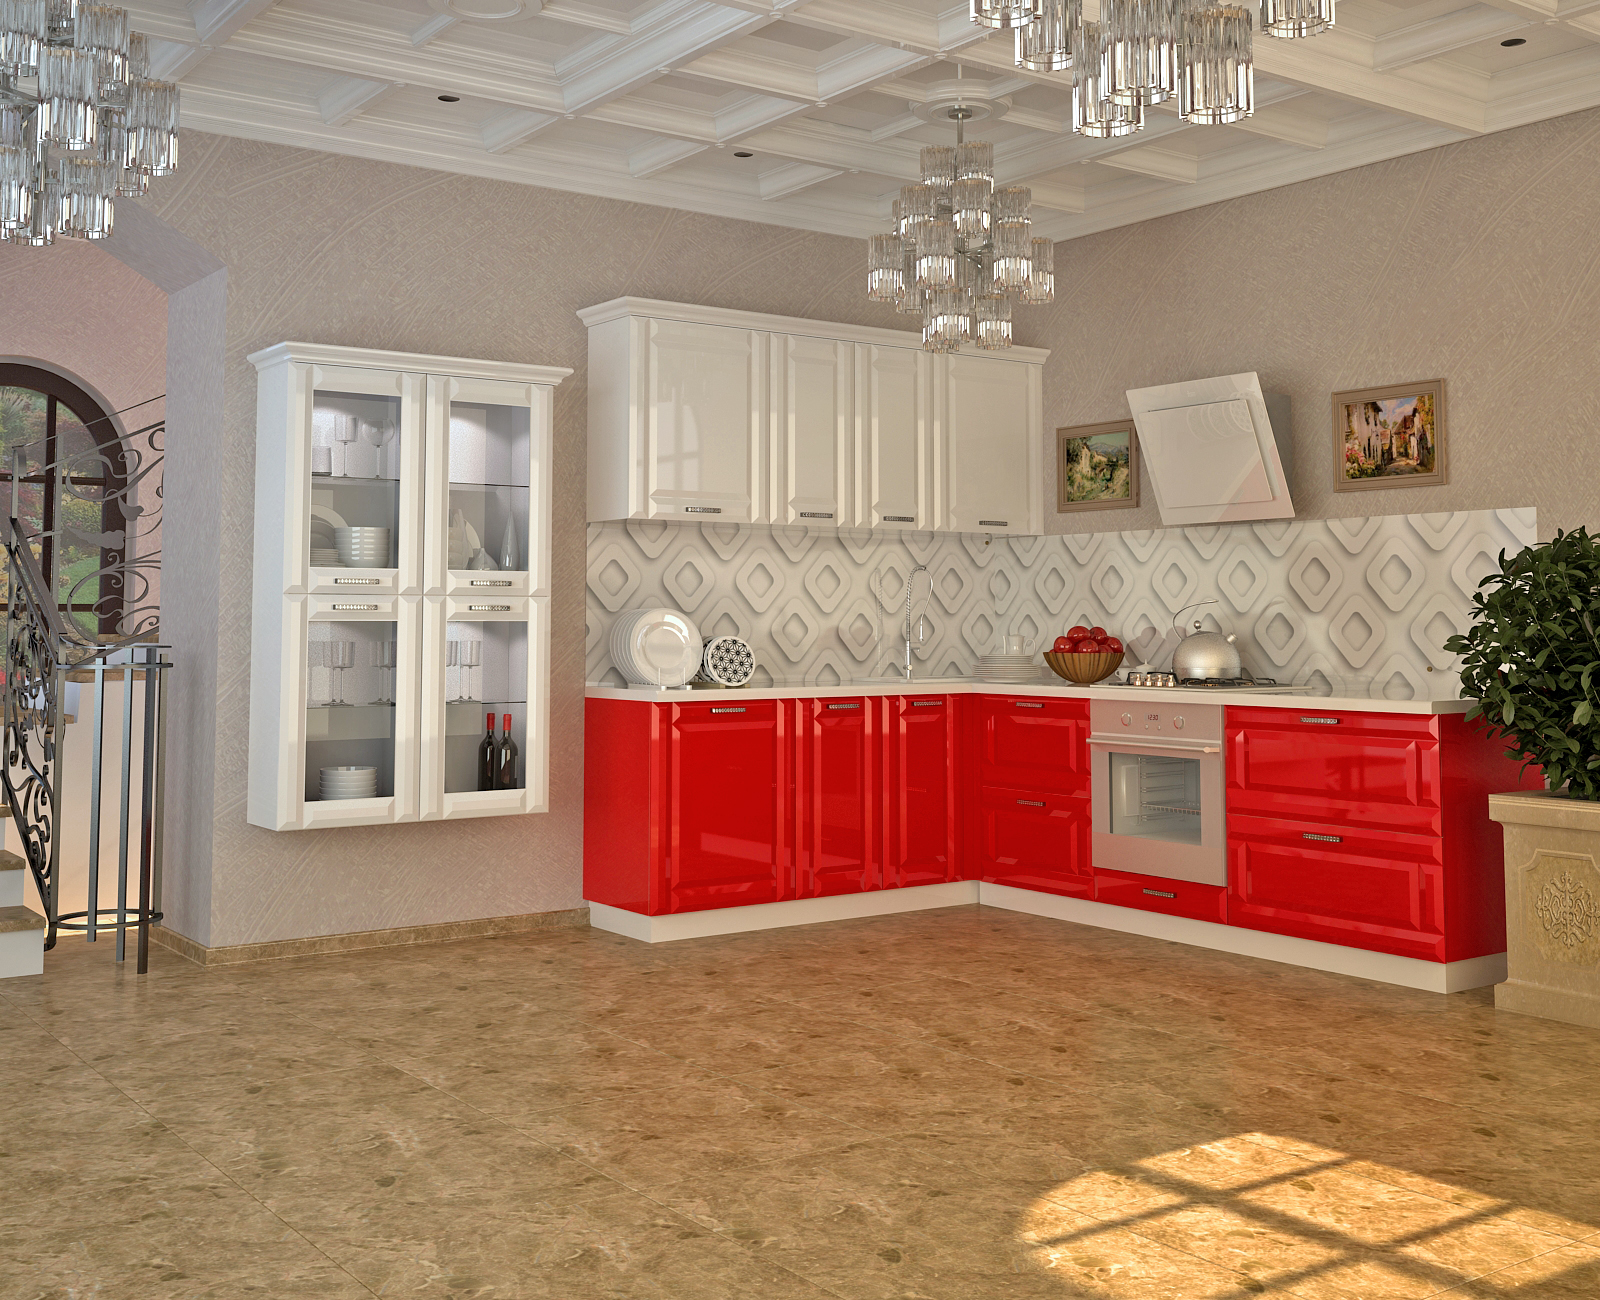 кухня угловая верх белый низ красный